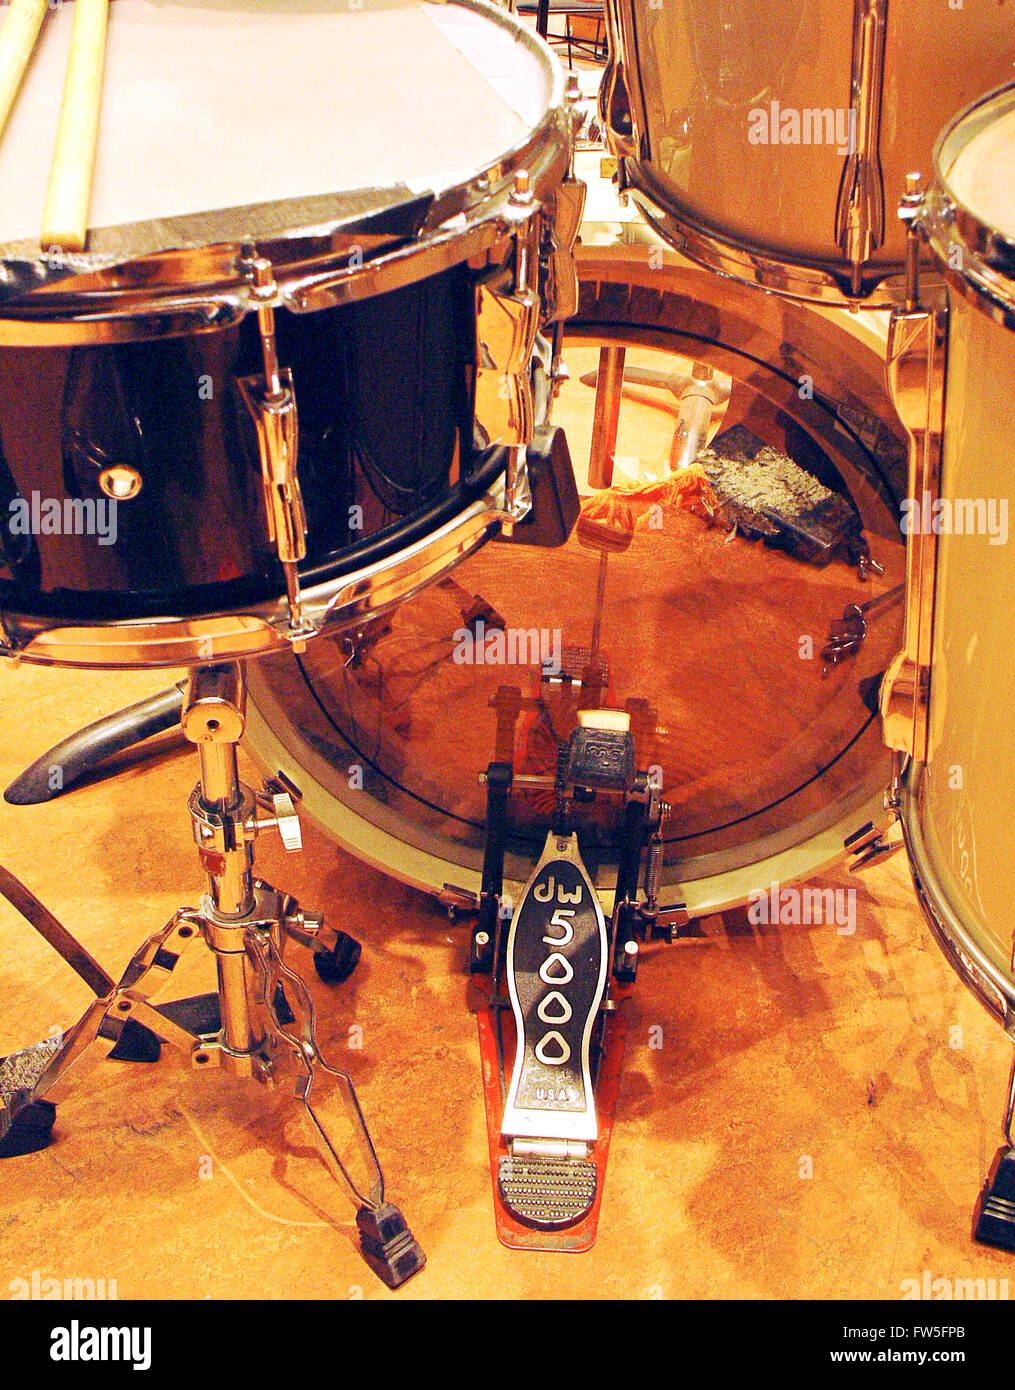 Schlagzeug - Konzert Plattform - Trommel und Bass-Drum - zeigt auch transparent Schlagfell mit Stürmer und muting Lappen zeigen Stockfoto